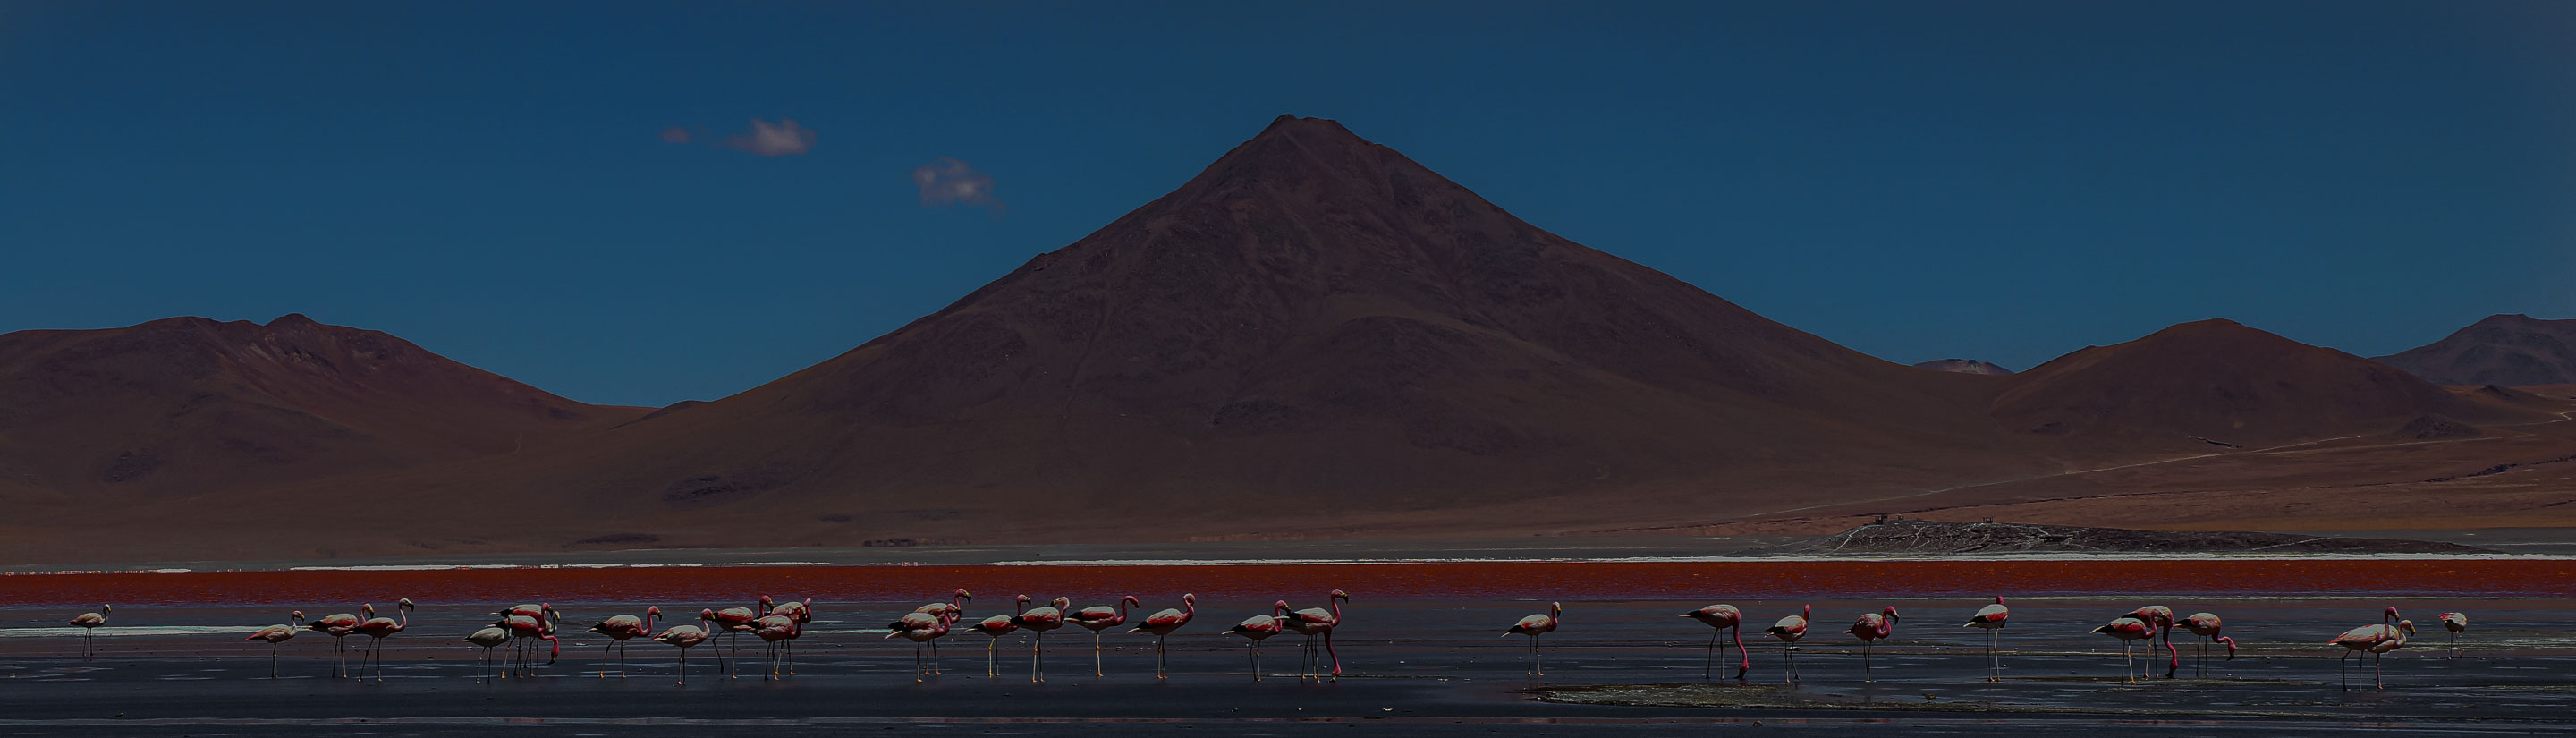 Bolivien Reise Flamingos